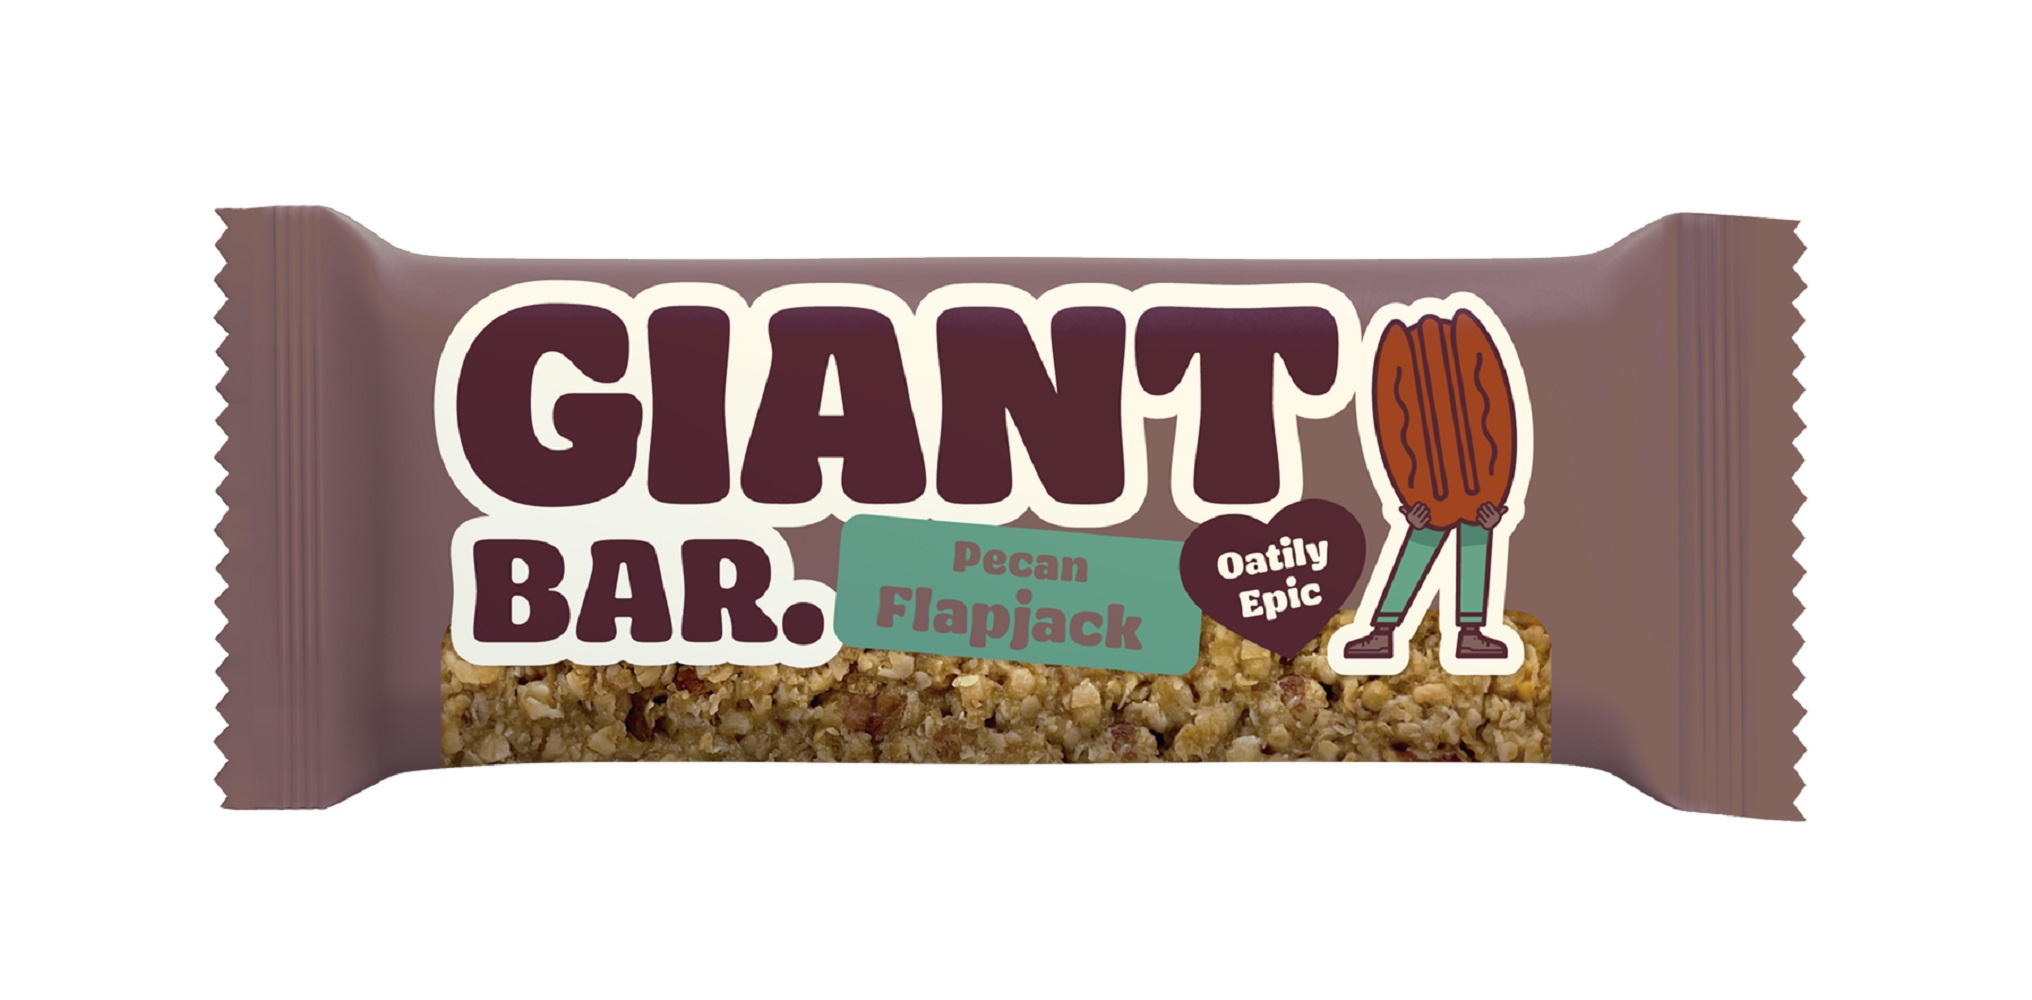 Giant Bar Pecan